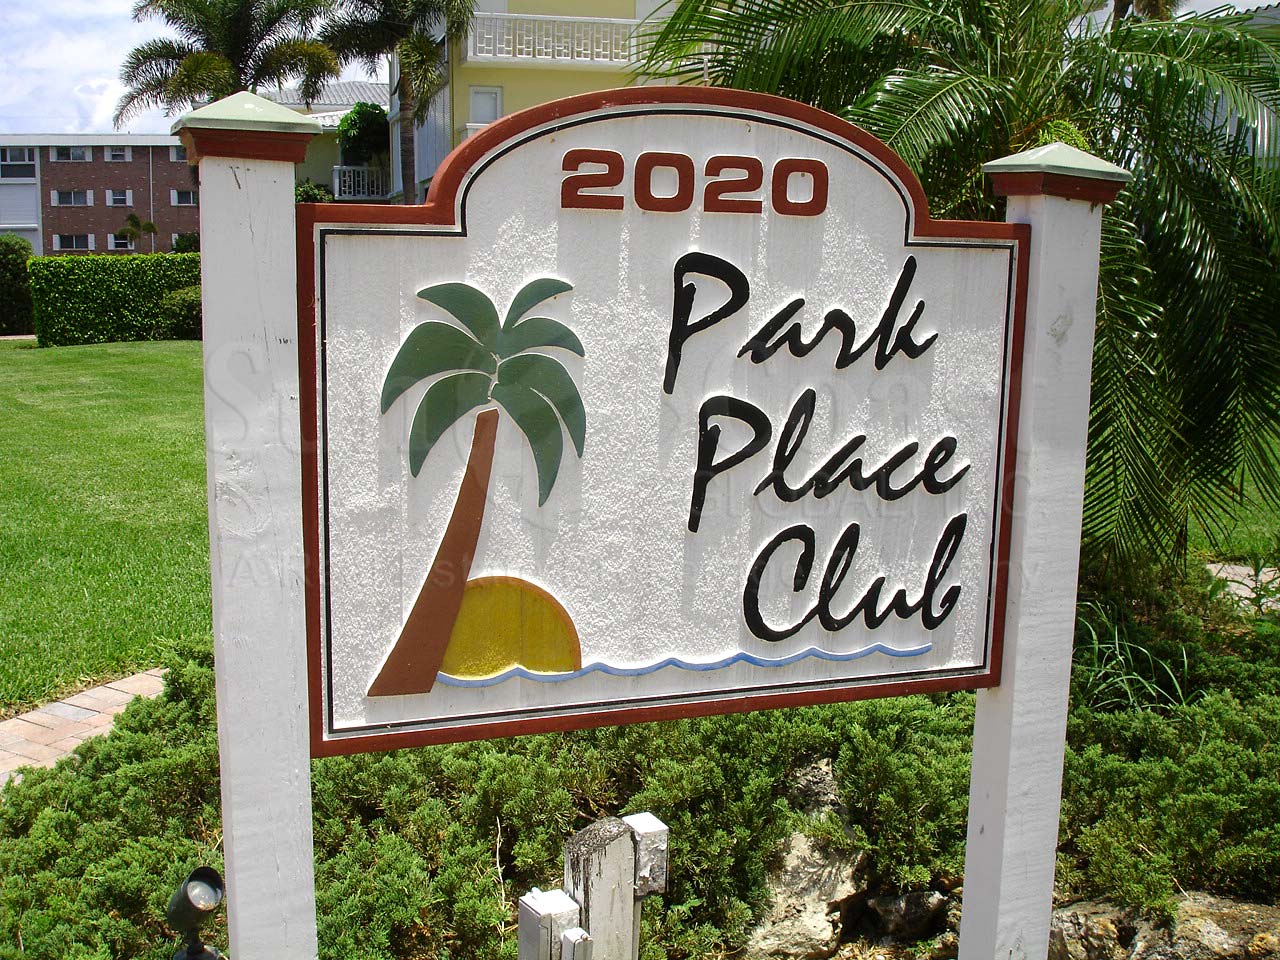 Park Place Club Signage